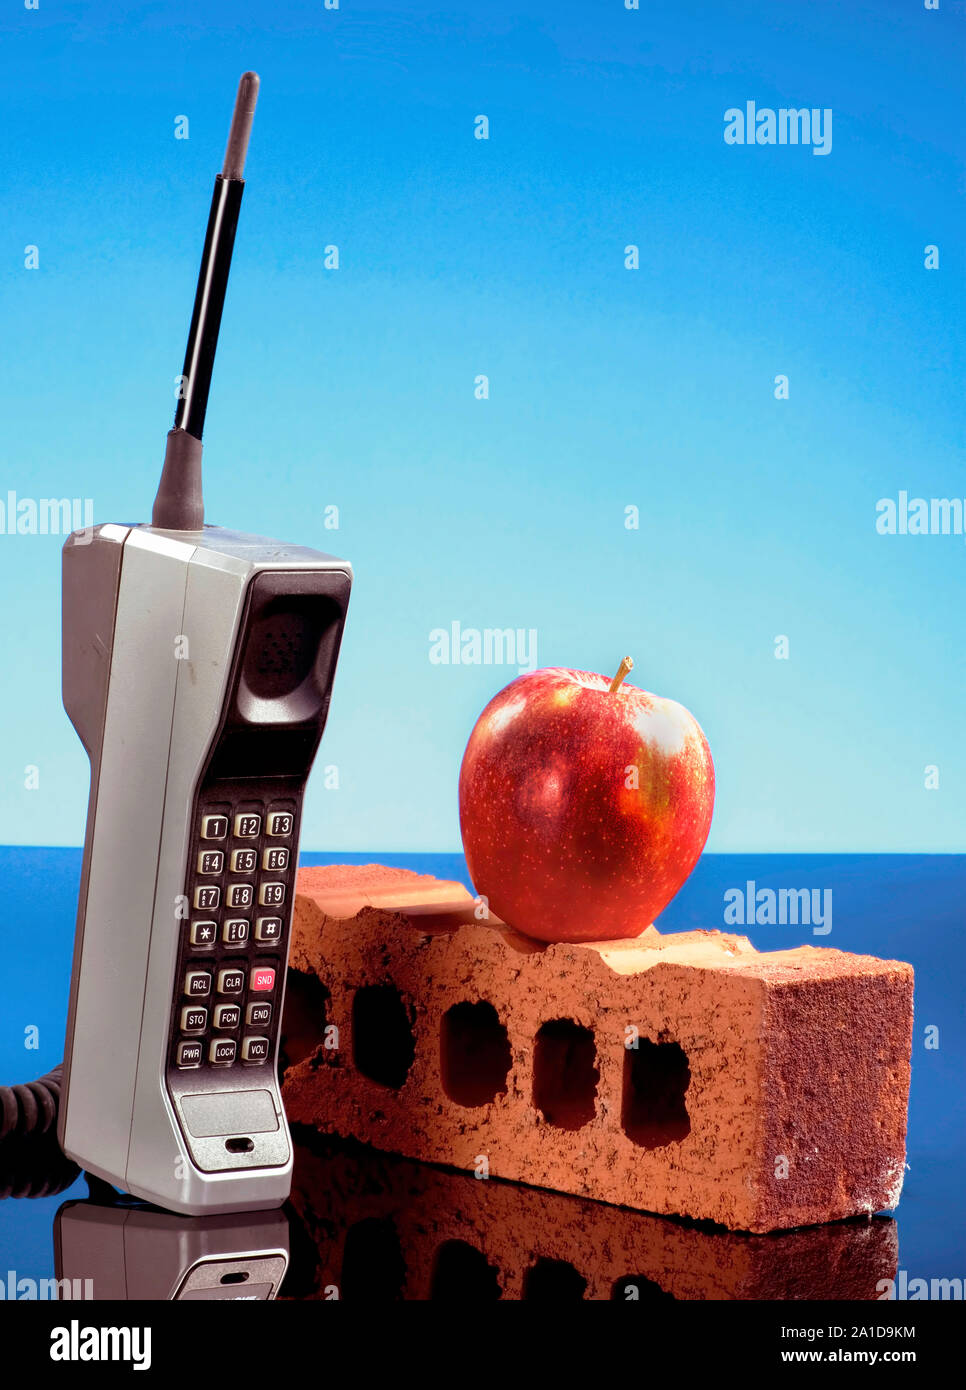 Vieux téléphone cellulaire appelé la brique téléphone avec une pomme rouge faite au début des années 80. Banque D'Images